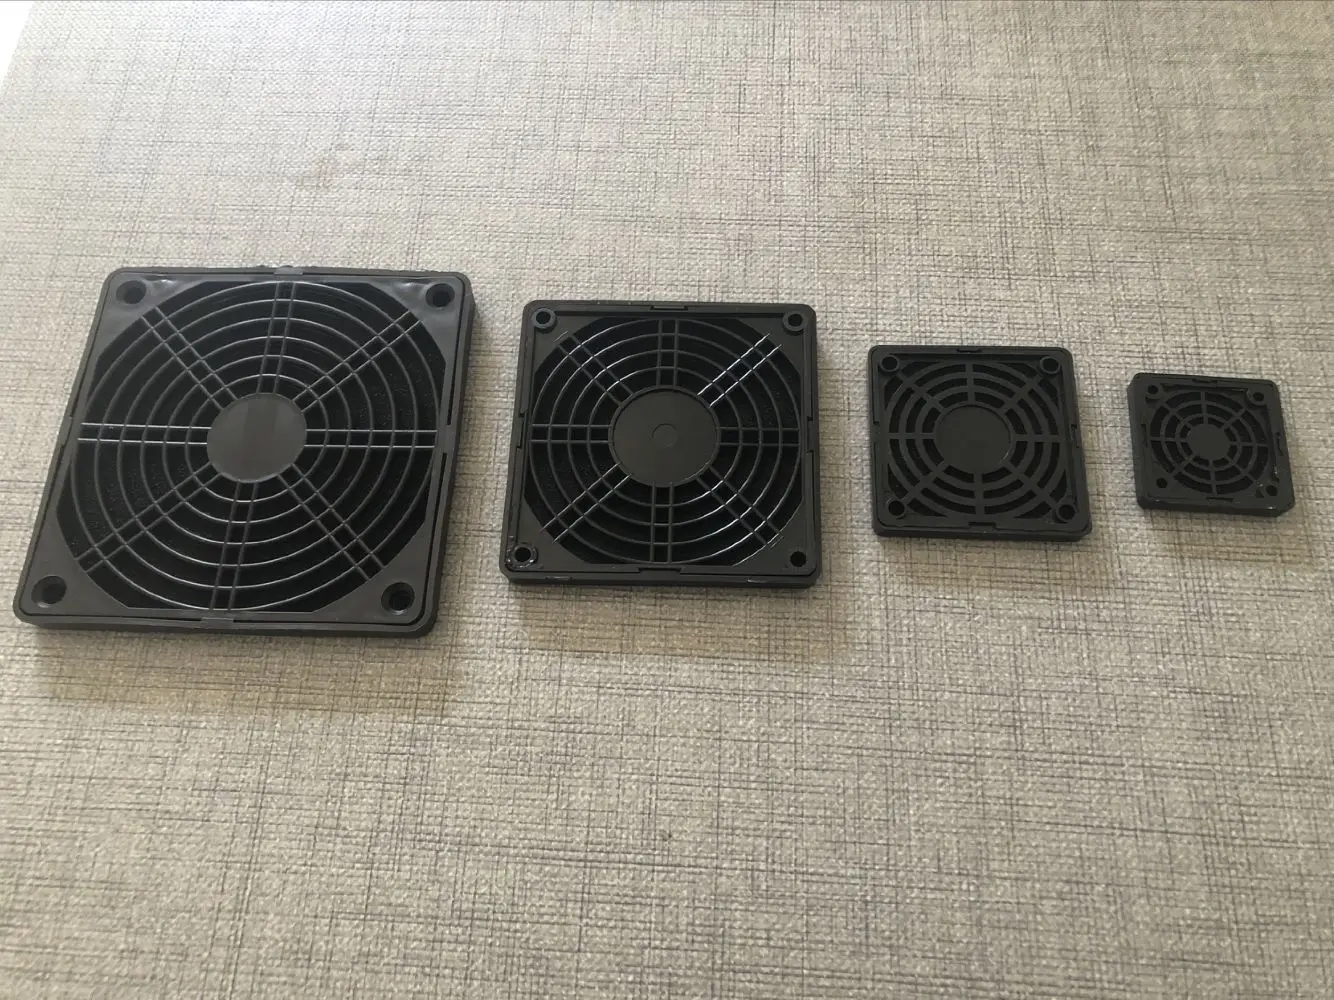 Protecteur de filtre à poussière de ventilateur en plastique, protecteur de grille, couvercle anti-poussière pour ordinateur PC, GérFilter, 80mm, 90mm, 120mm, 3 en 1